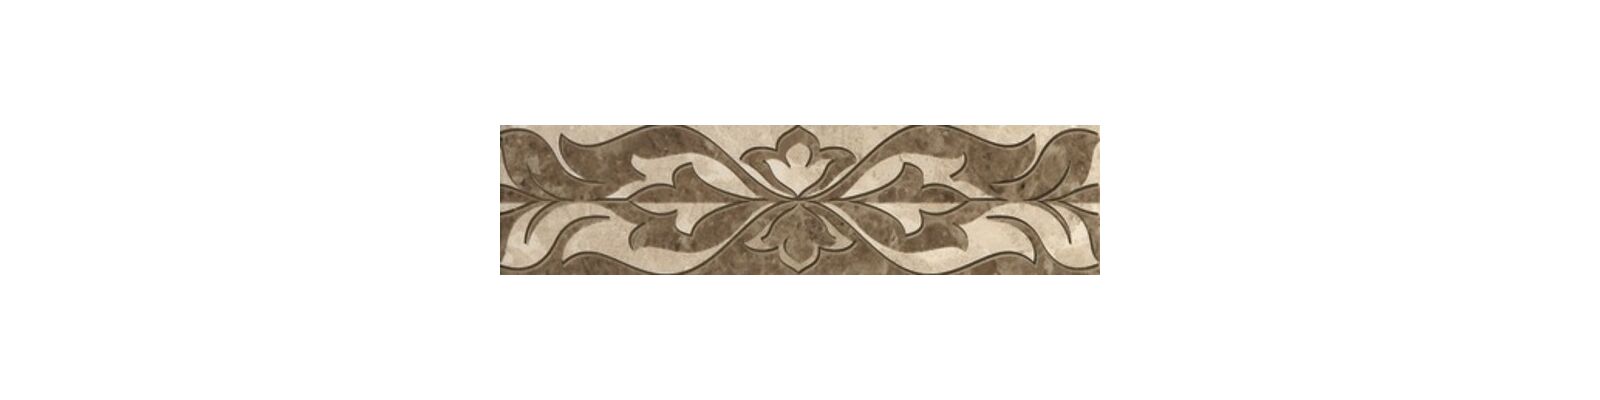 Бордюр настенный керамический Saloni (Салони) brown border 01 75х300 Gracia Ceramica